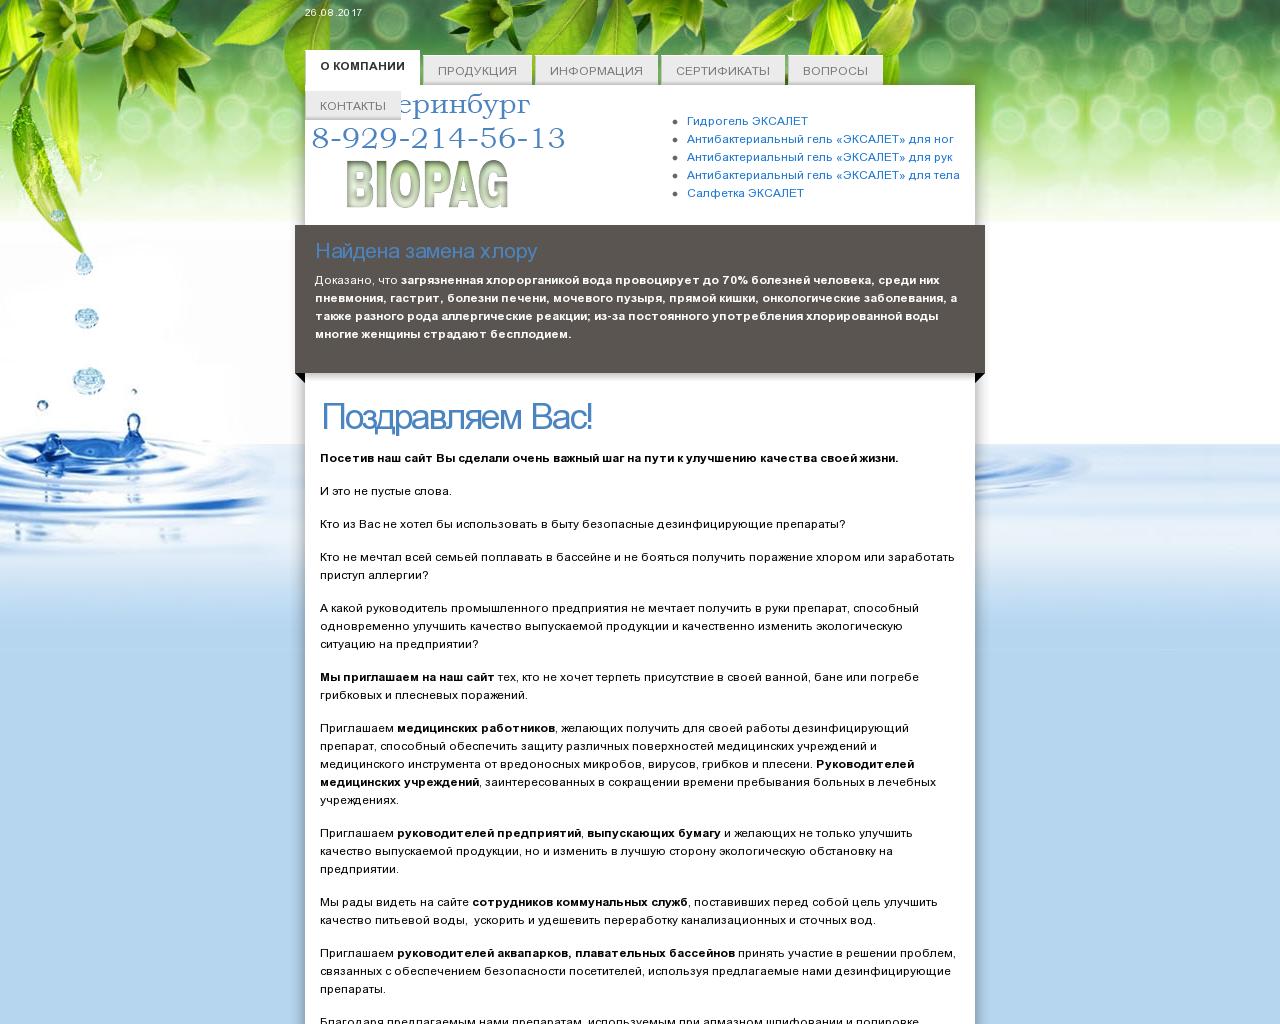 Изображение сайта biopag.ru в разрешении 1280x1024